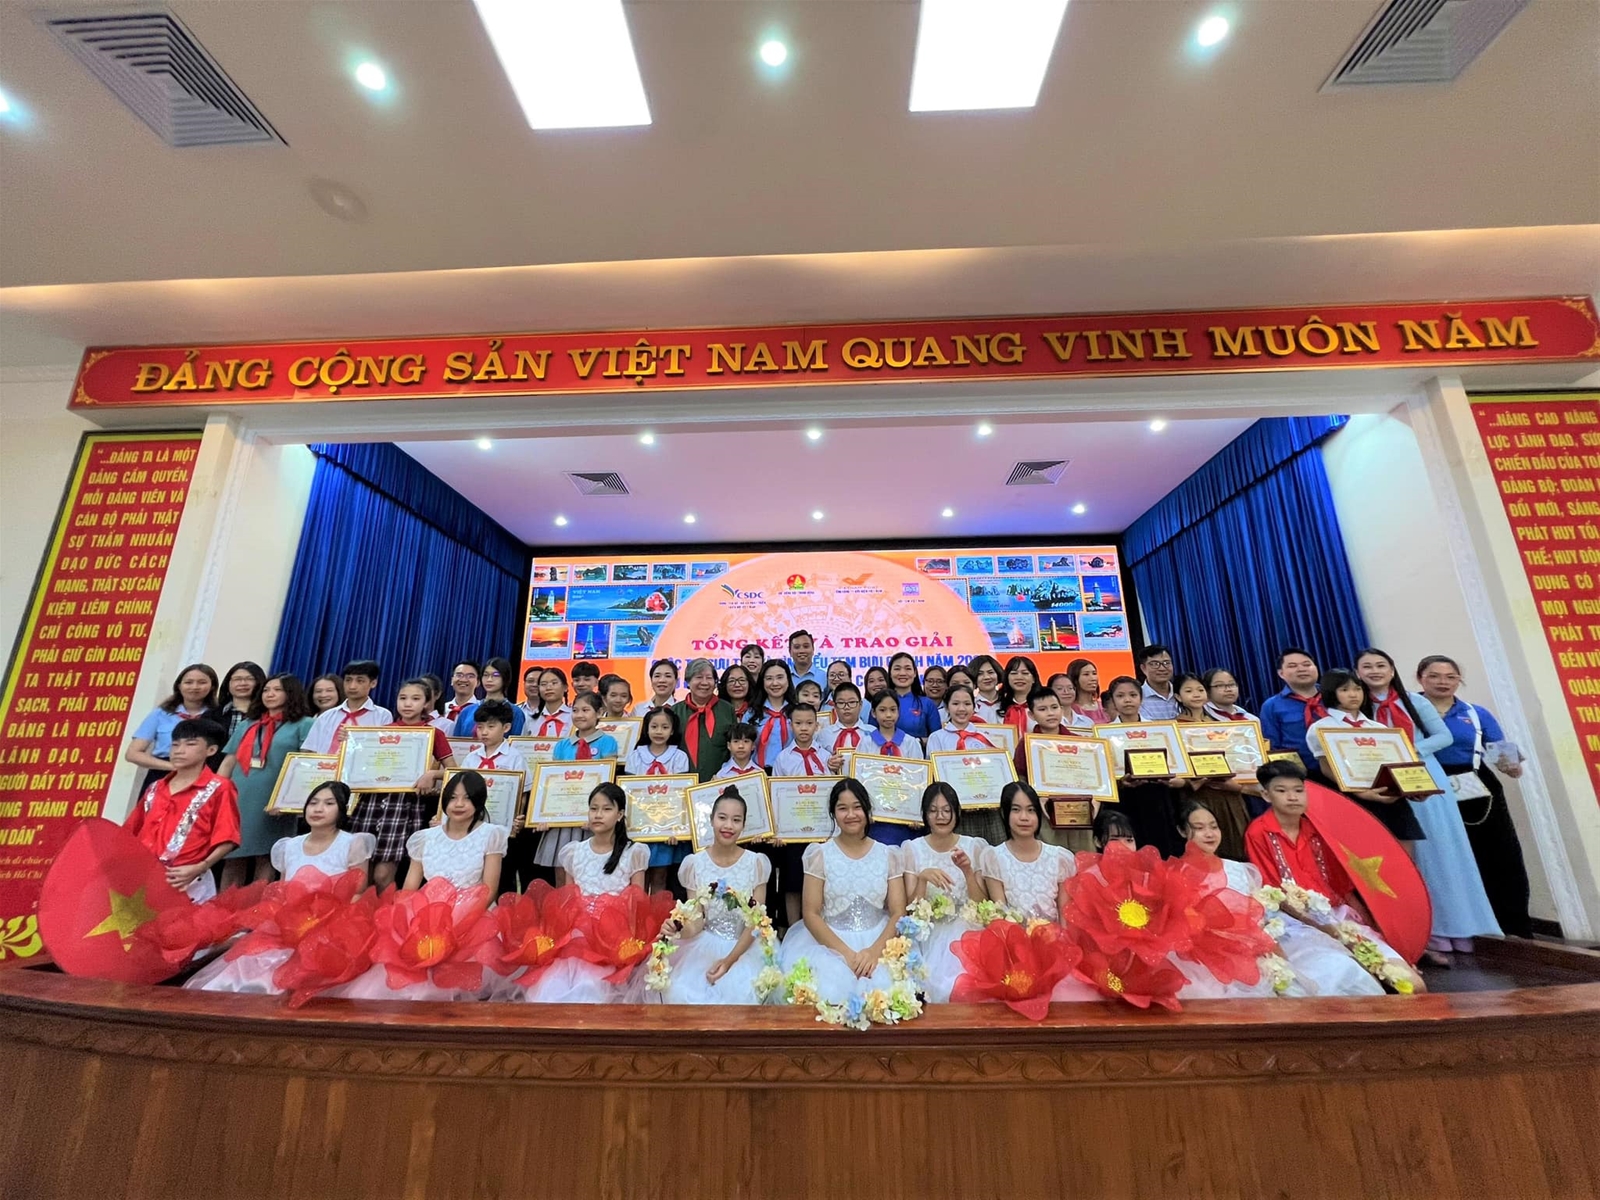  Tổng kết và trao giải cuộc thi Sưu tập và tìm hiểu tem Bưu chính năm 2022 với chủ đề “Biển đảo Việt Nam qua con tem Bưu chính”.